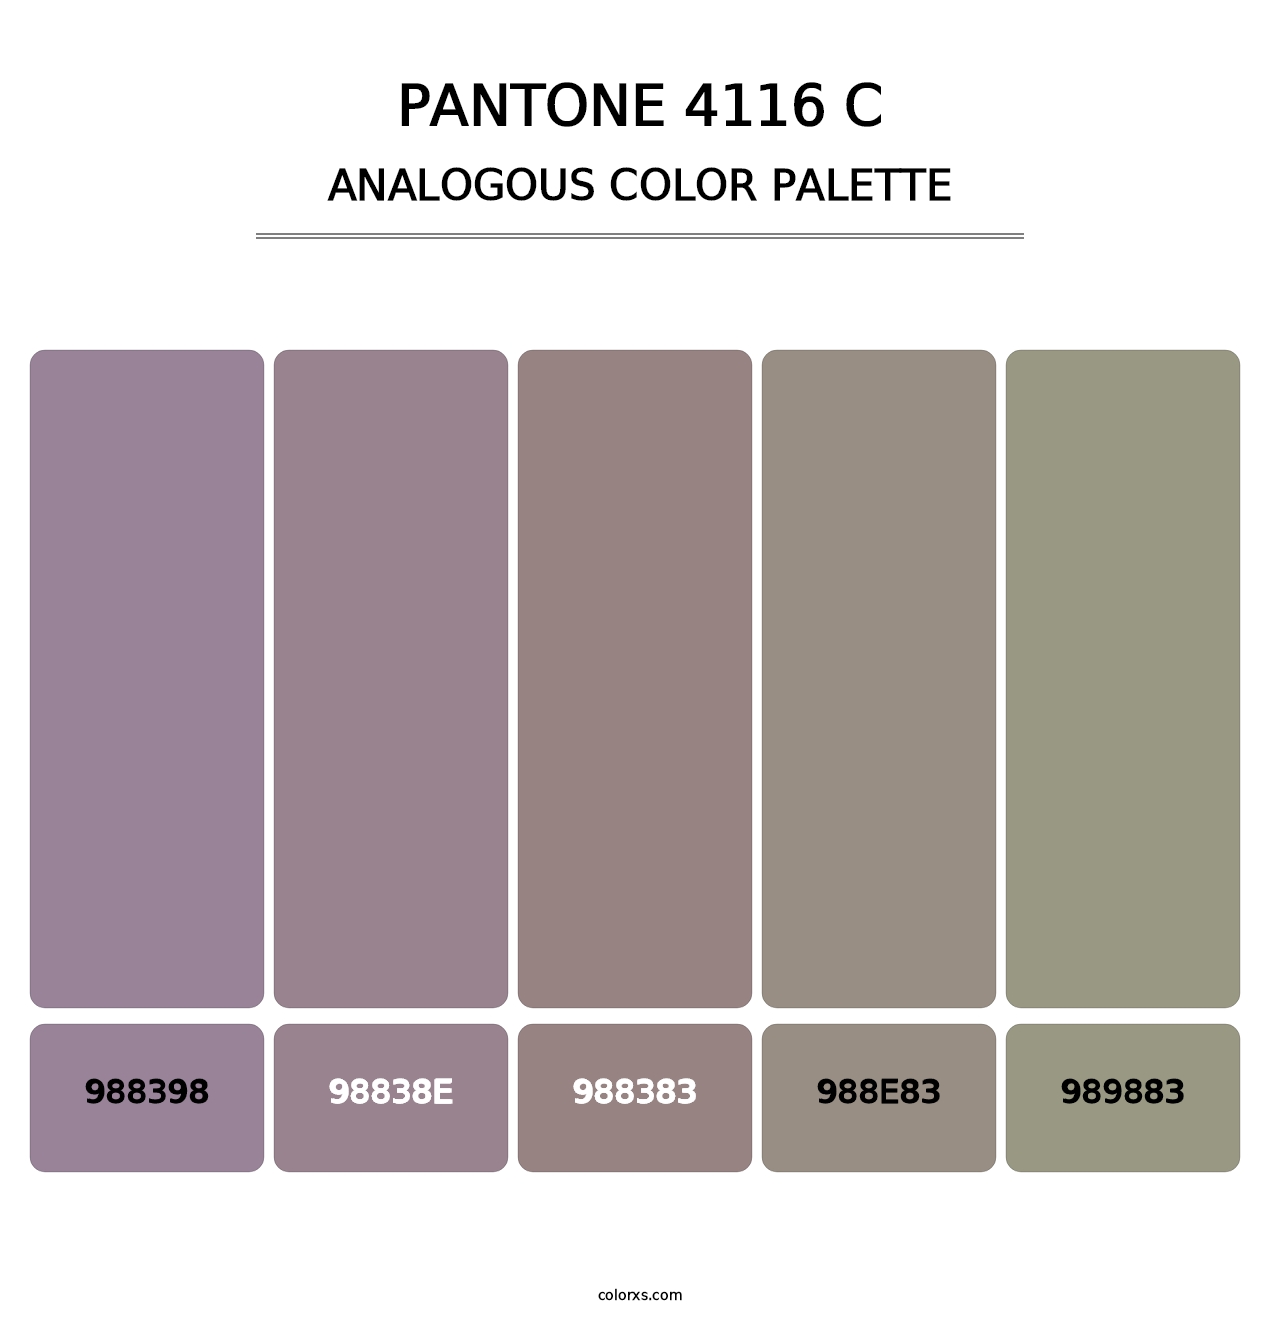 PANTONE 4116 C - Analogous Color Palette